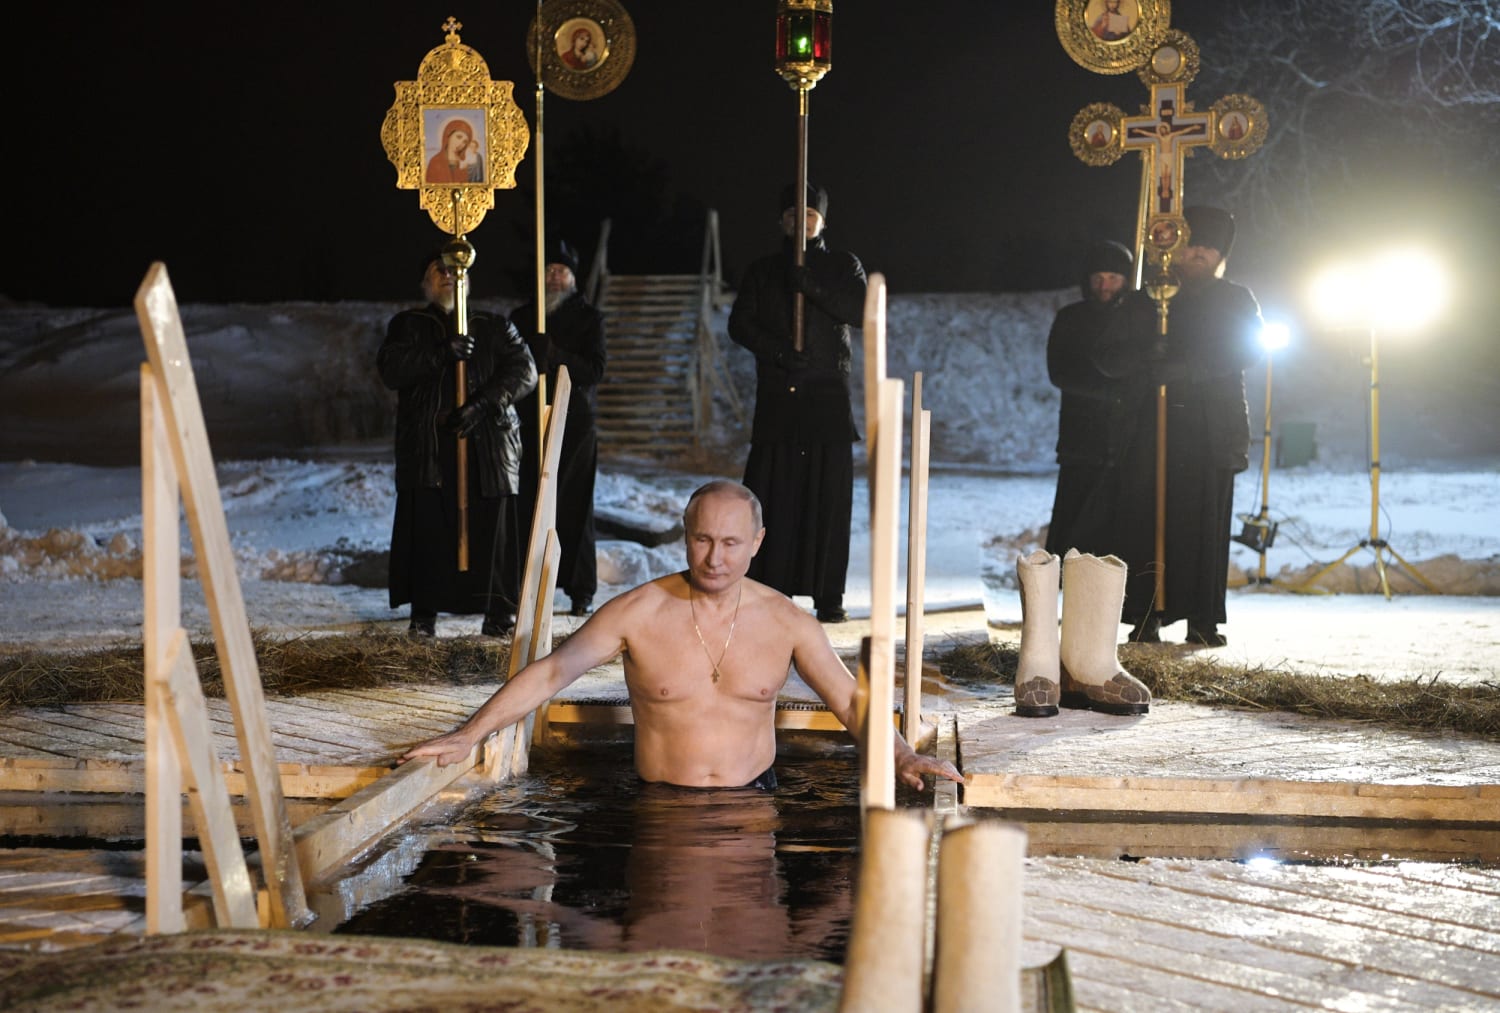 Shirtless Vladimir Putin takes dip in icy Russian lake